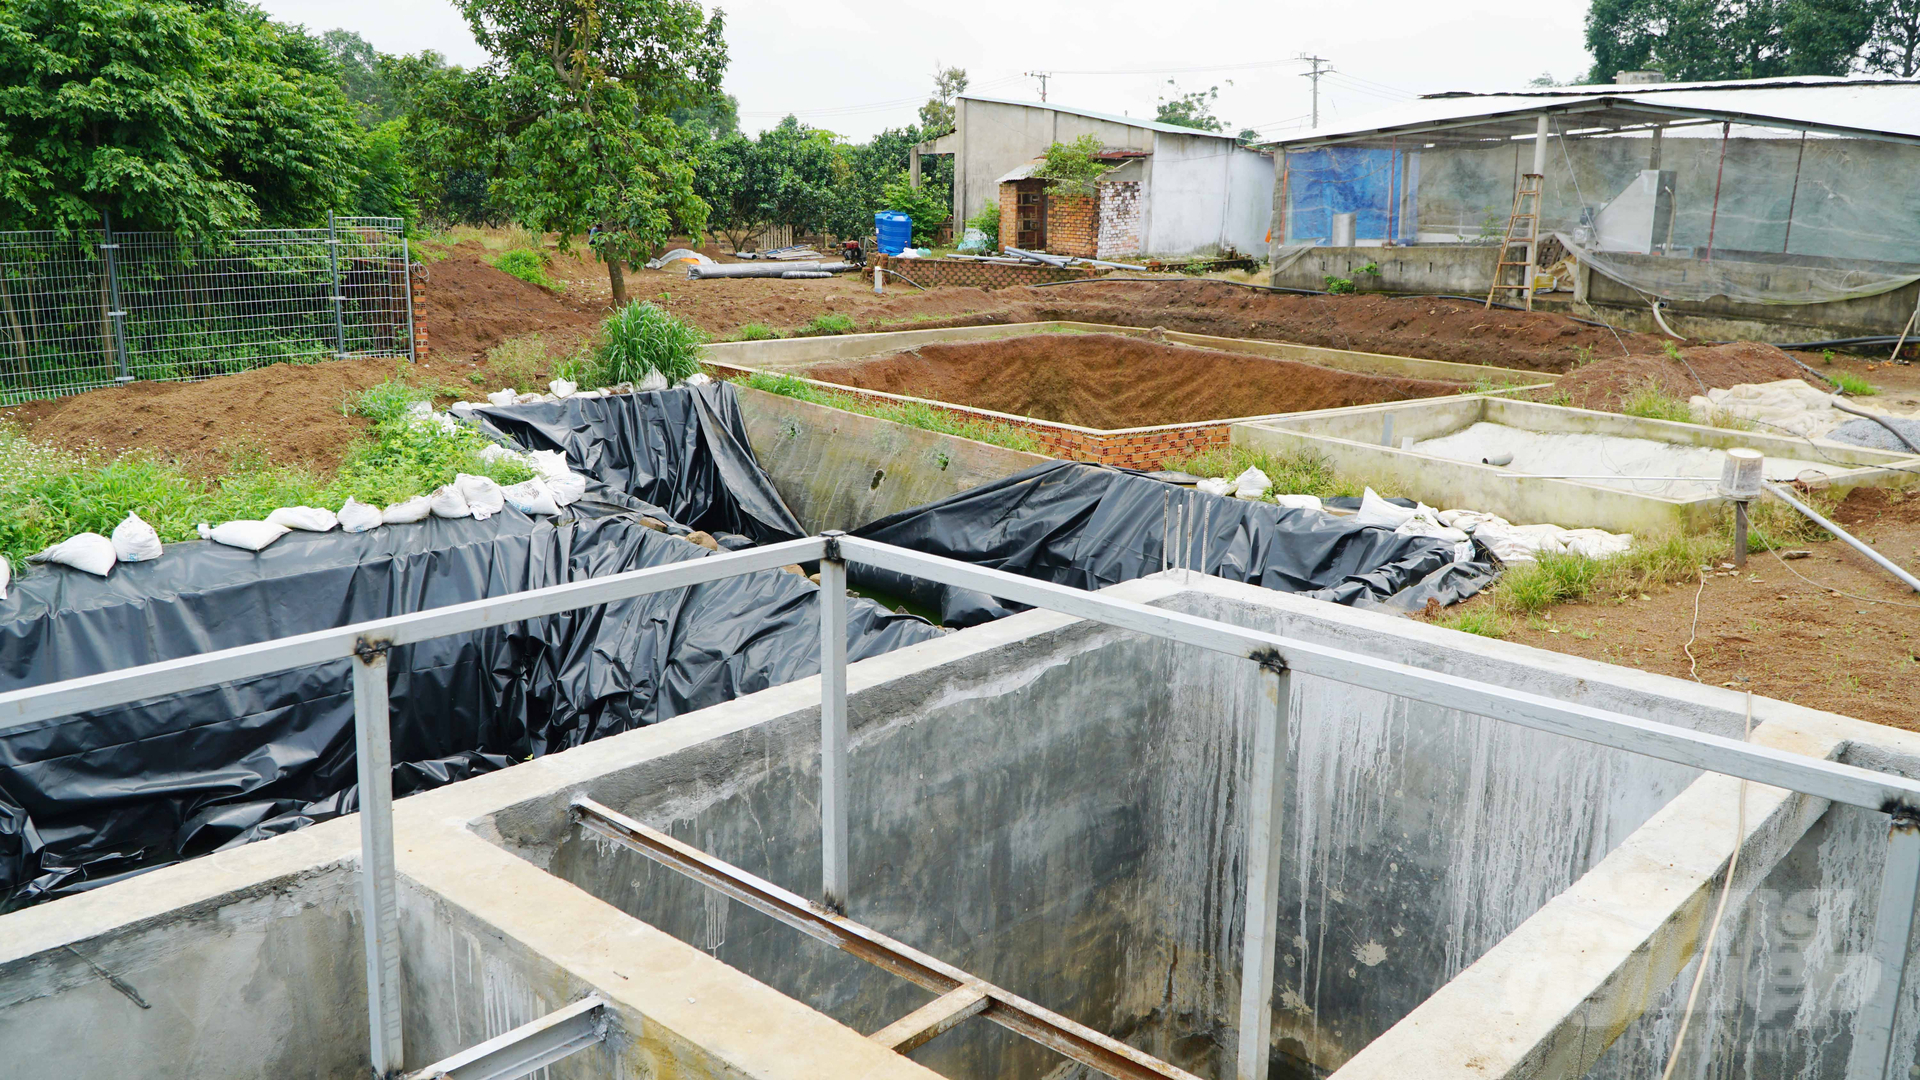 Nhiều hộ chăn nuôi Đồng Nai đang đầu tư hệ thống máy ép phân thô và xử lý chất thải theo quy chuẩn mới nhất. Ảnh: Lê Bình.